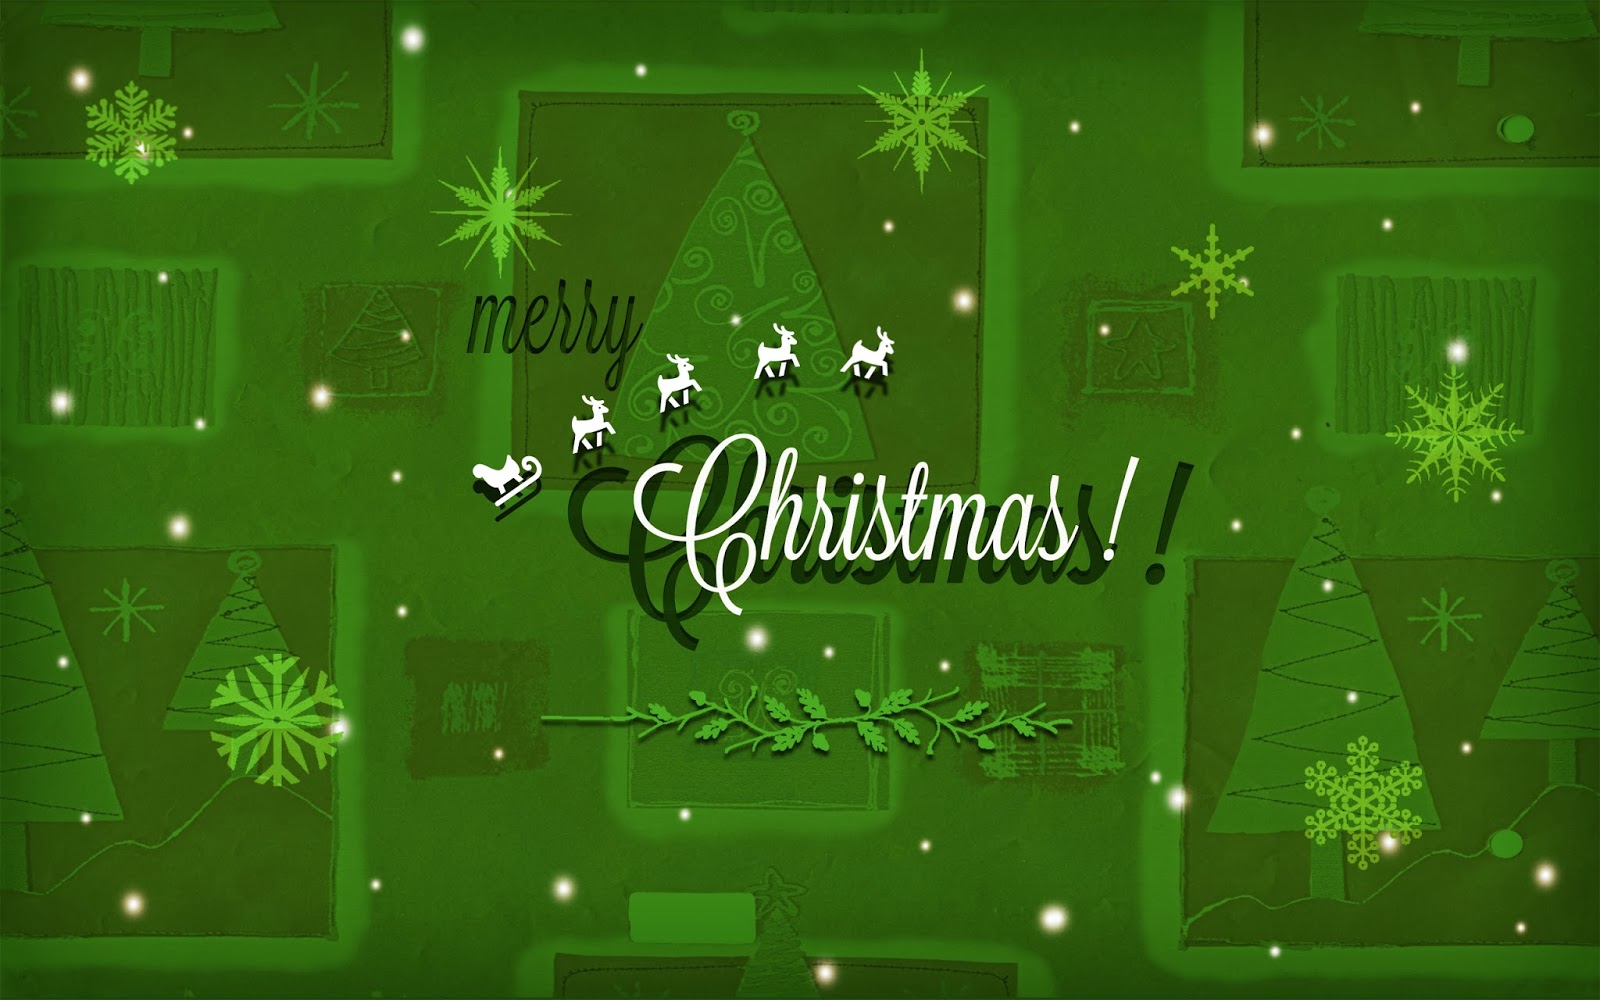 クリスマス壁紙hdワイド画像,緑,テキスト,フォント,クリスマス・イブ,クリスマス